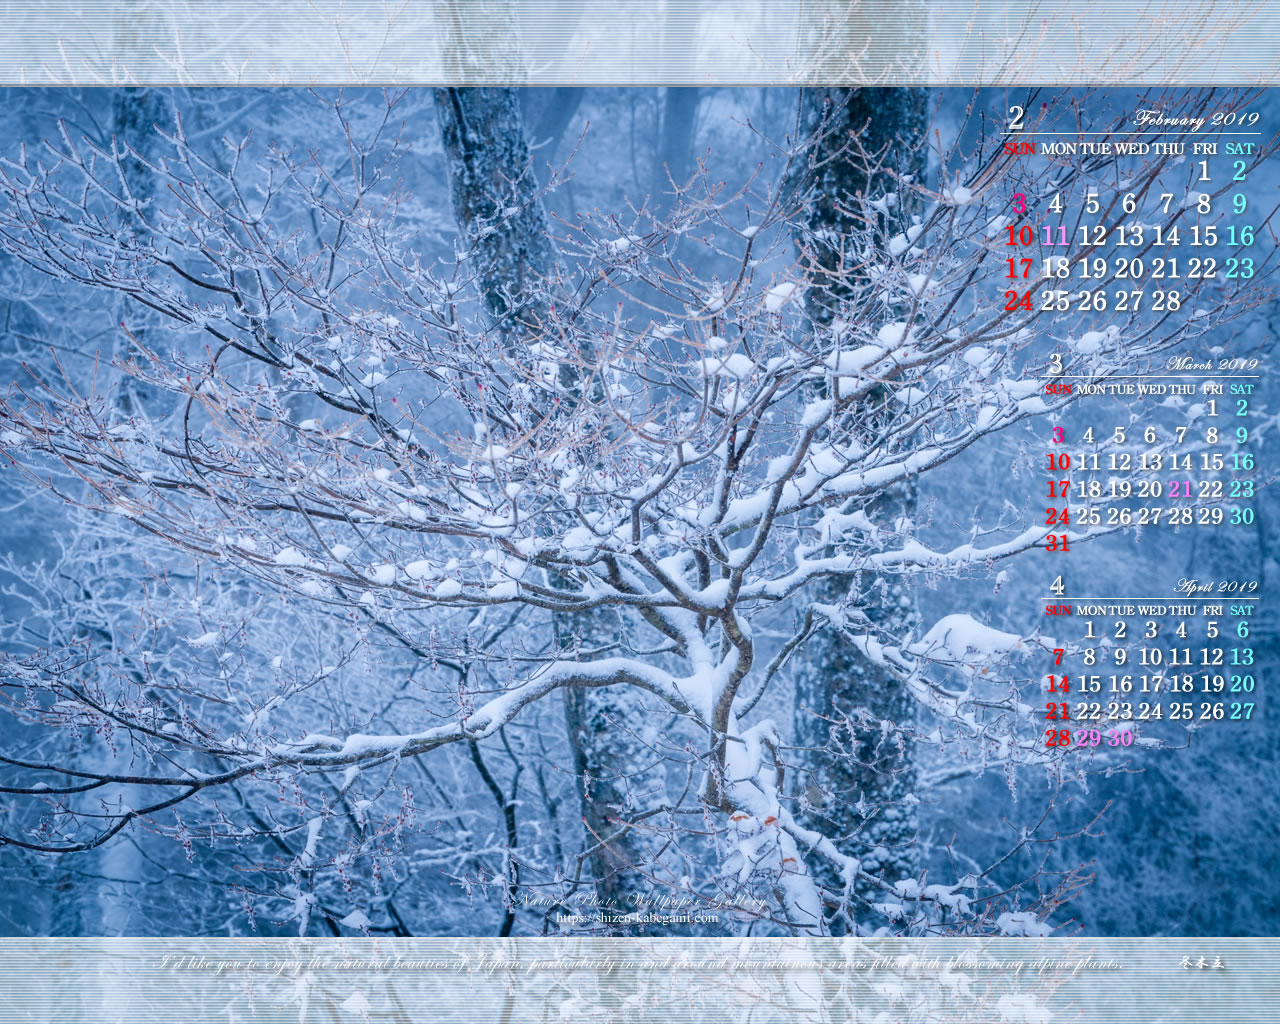 19年2月カレンダー壁紙 自然 風景 冬木立 ネイチャーフォト壁紙館